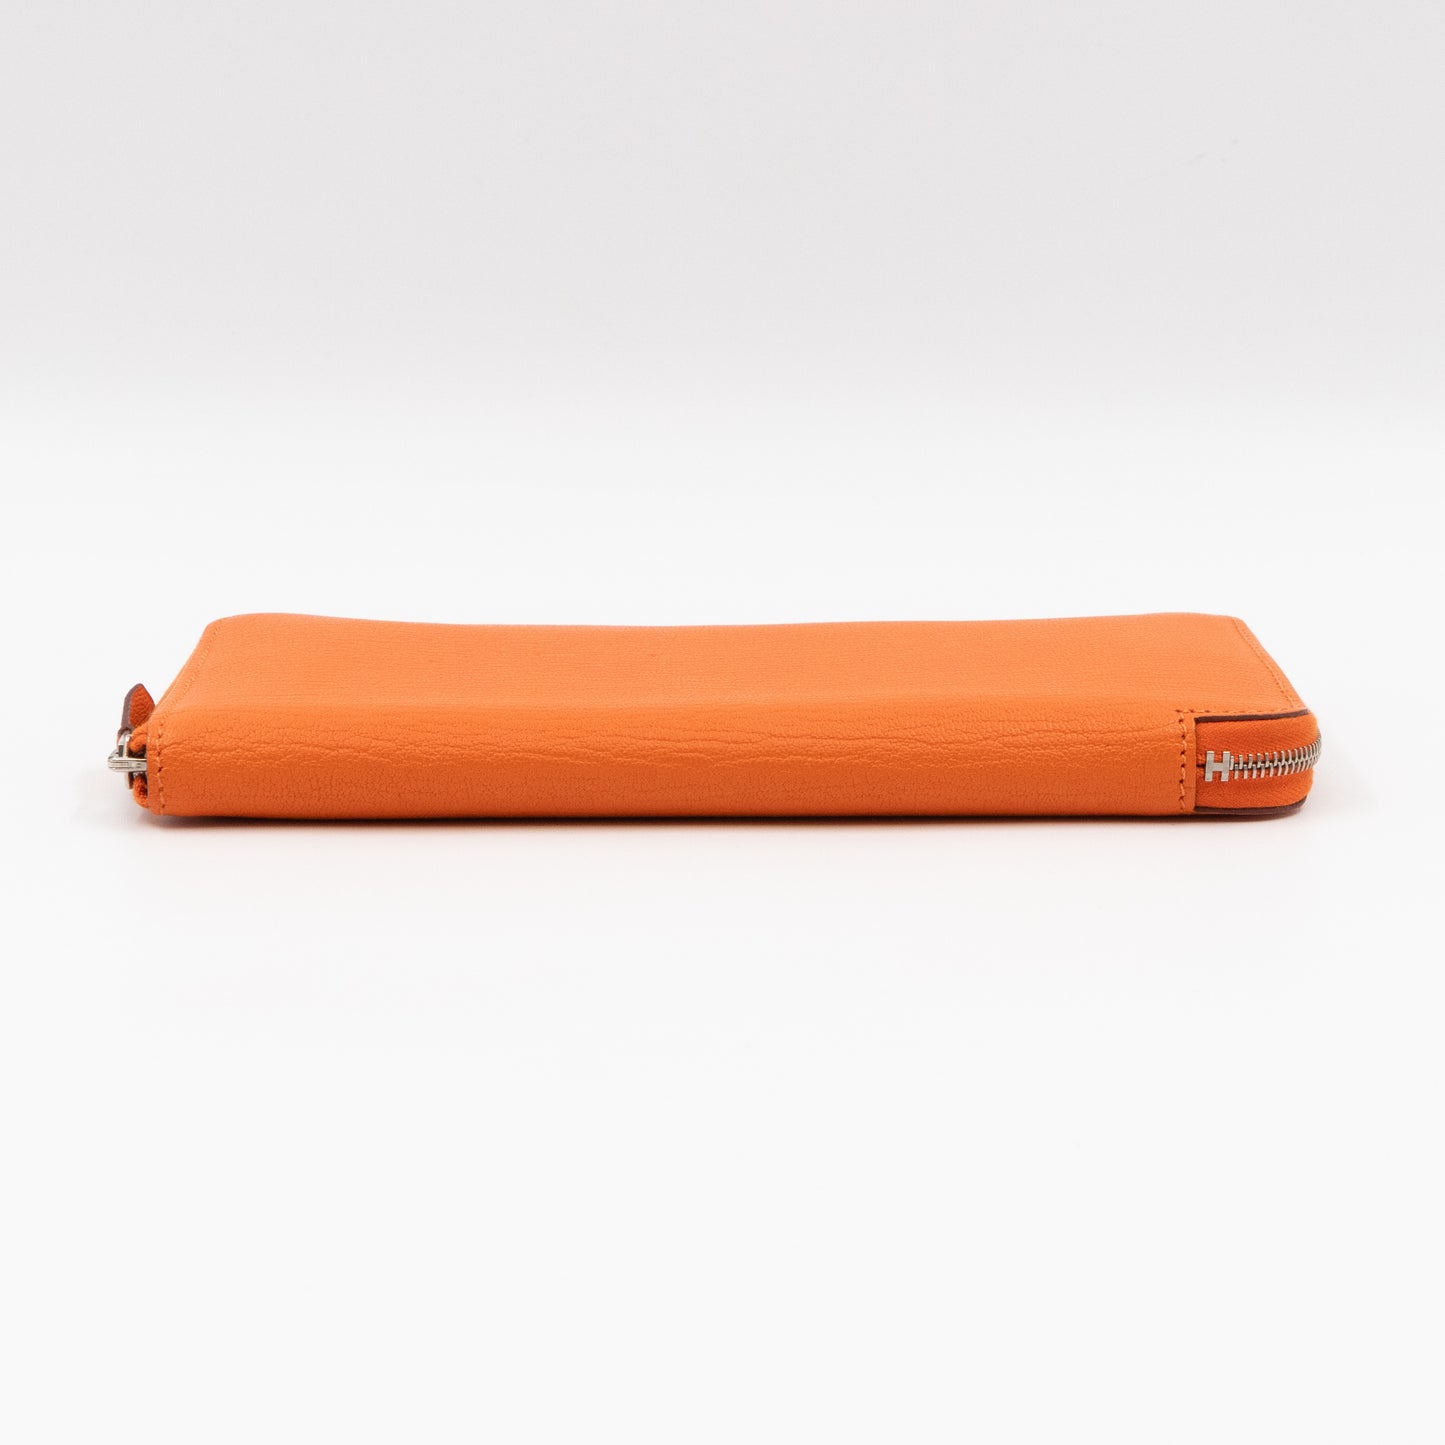 Azap Classique Long Wallet Orange Leather